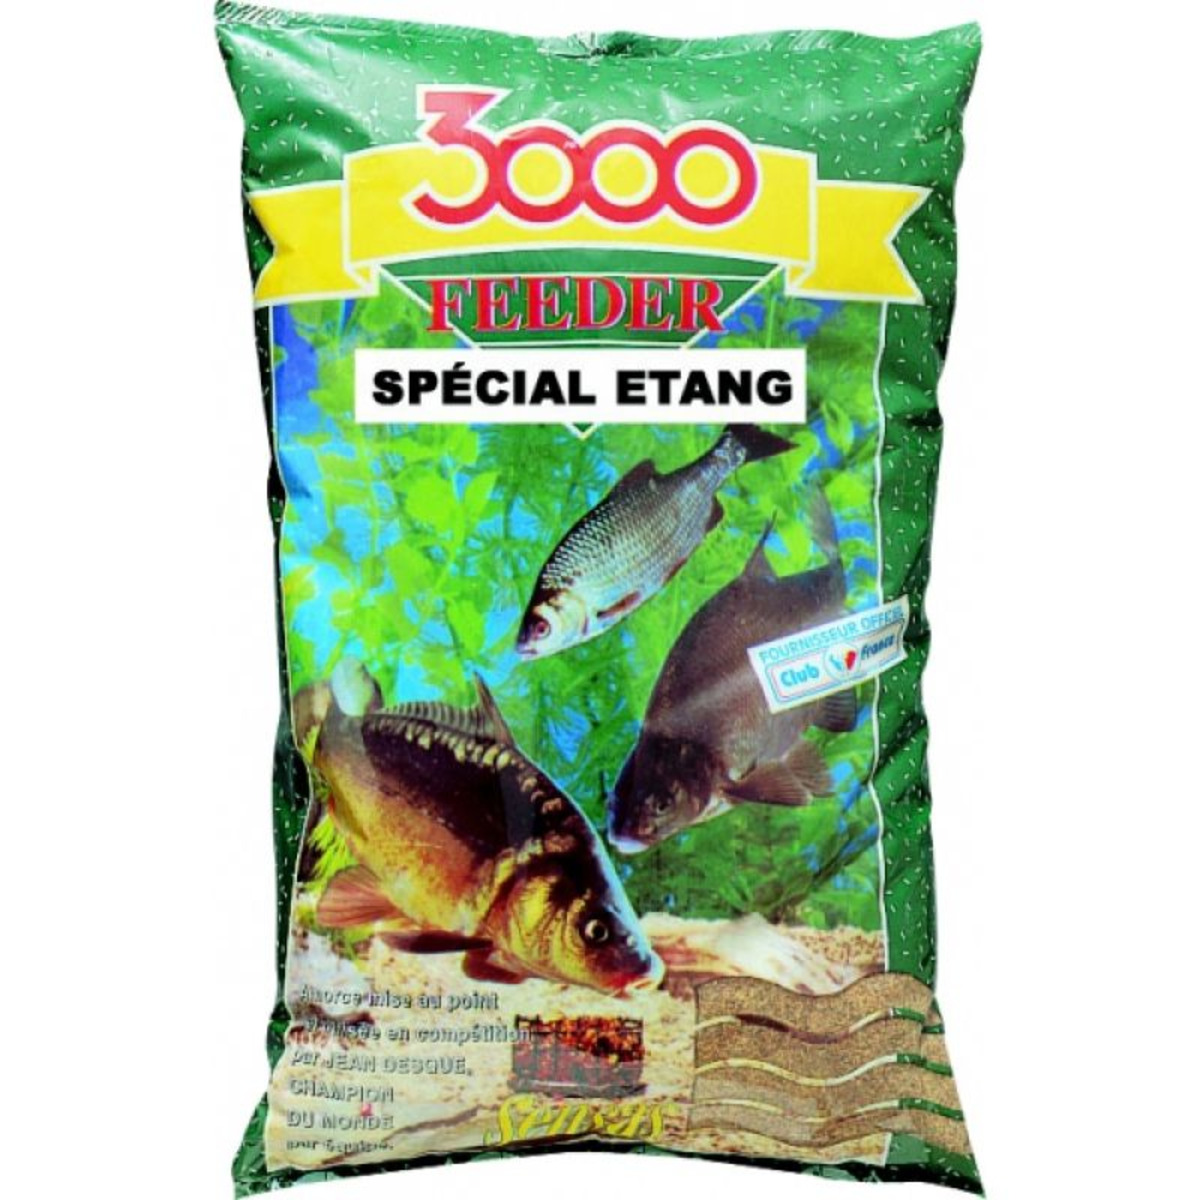 Sensas 3000 Feeder Special Etang - 1 kg